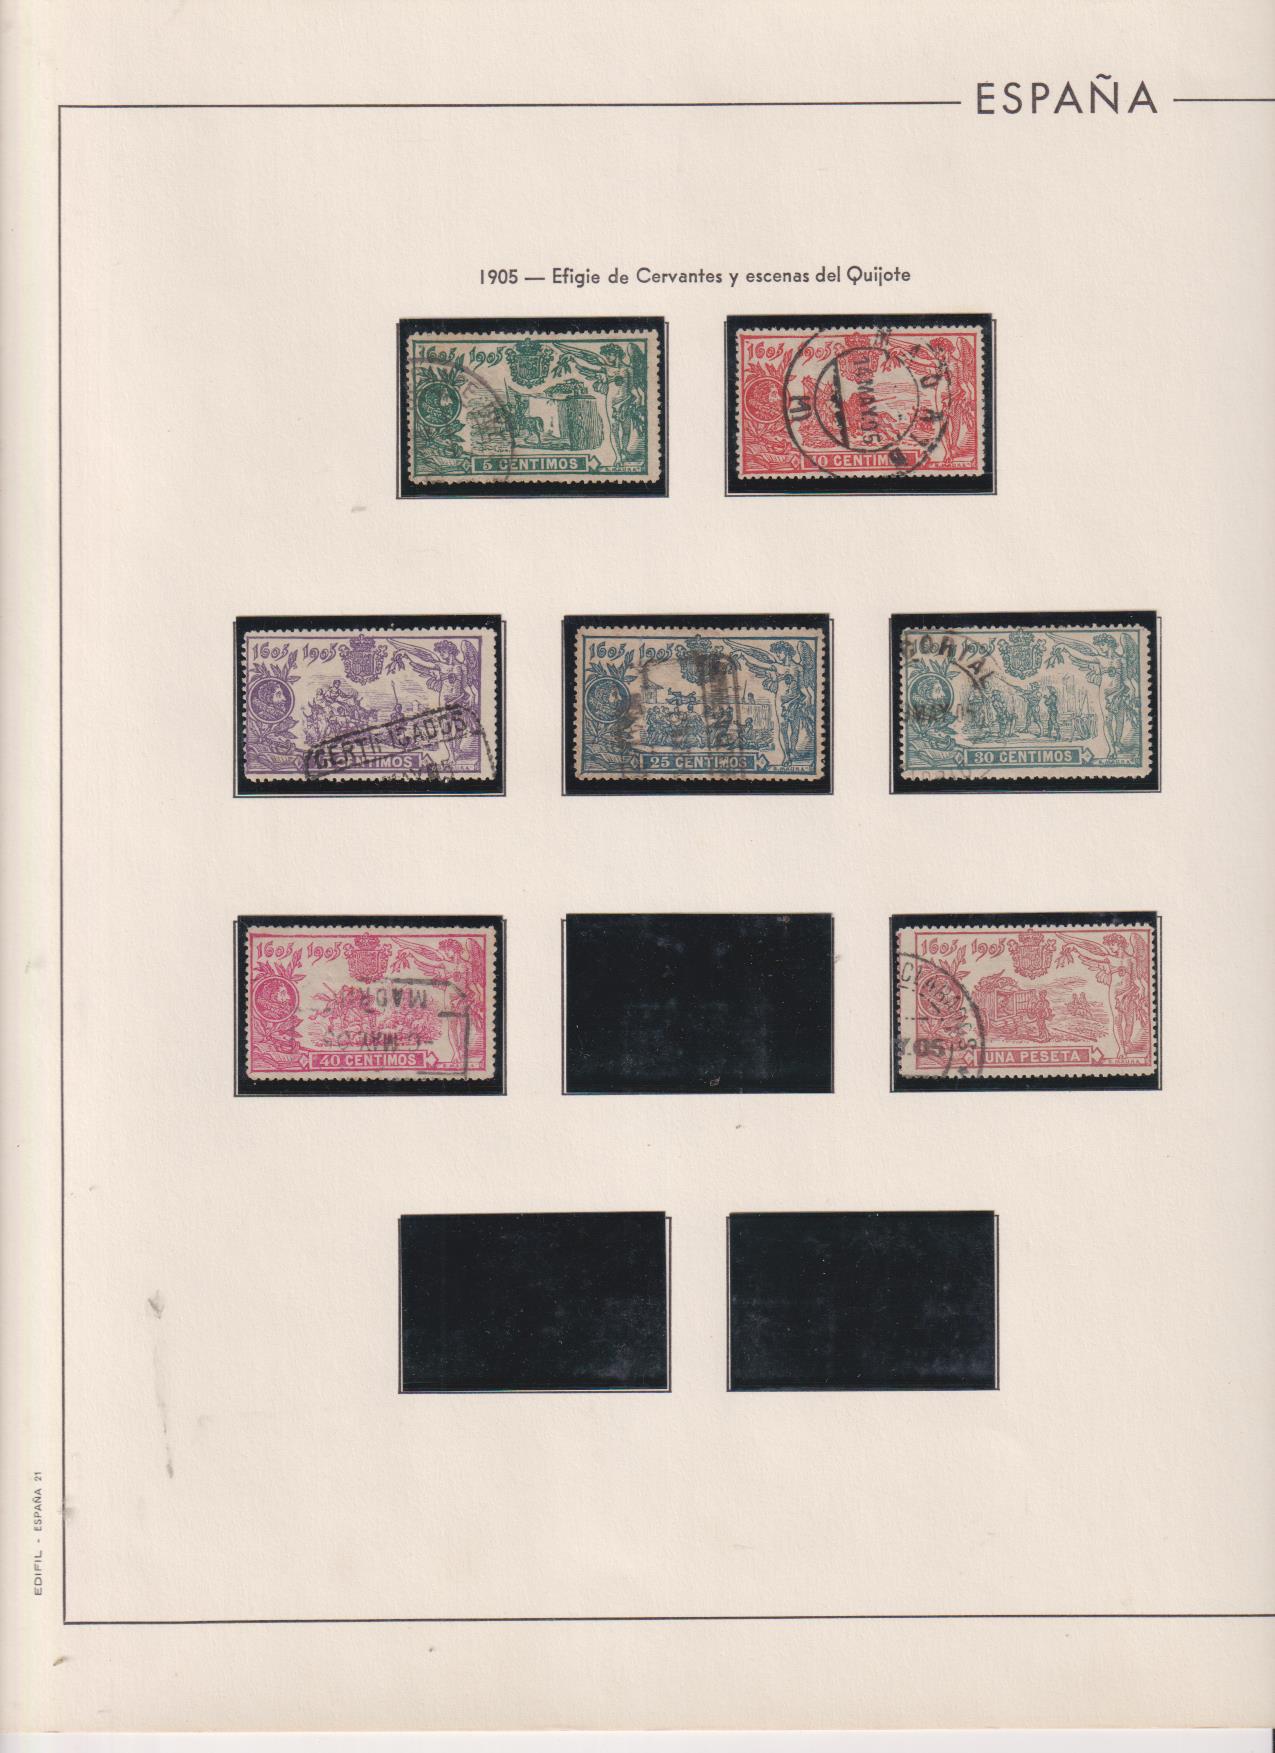 1905. III Centenario de la Publicación de El Quijote. Edifil 257,58,59,60,61,62,64. Usados